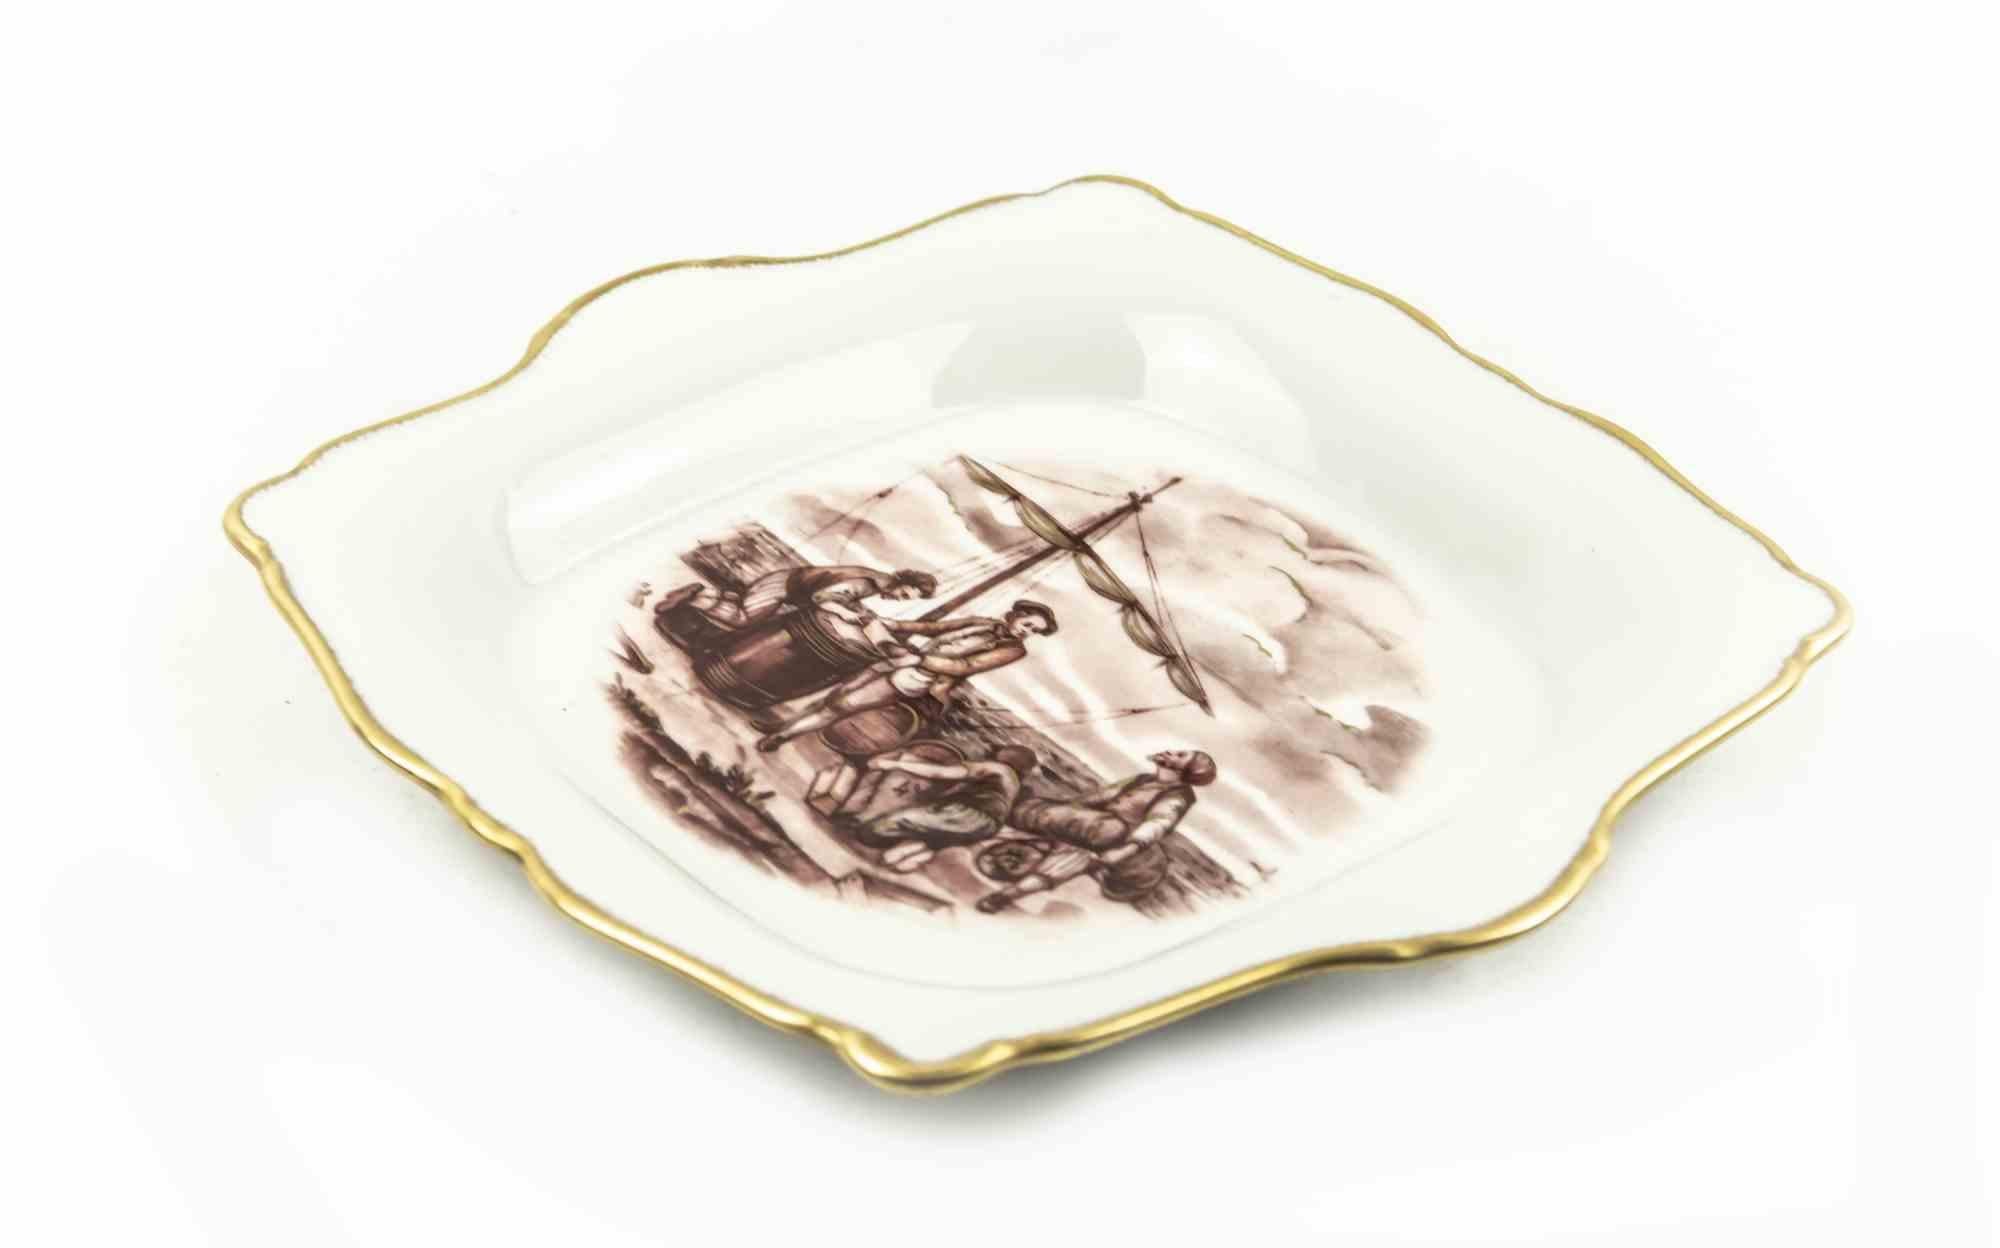 Le centre de table vintage en porcelaine de Limoges est un objet original réalisé au milieu du 20e siècle.

Porcelaine fine originale. 

Fabriqué en France.

Sur la base 